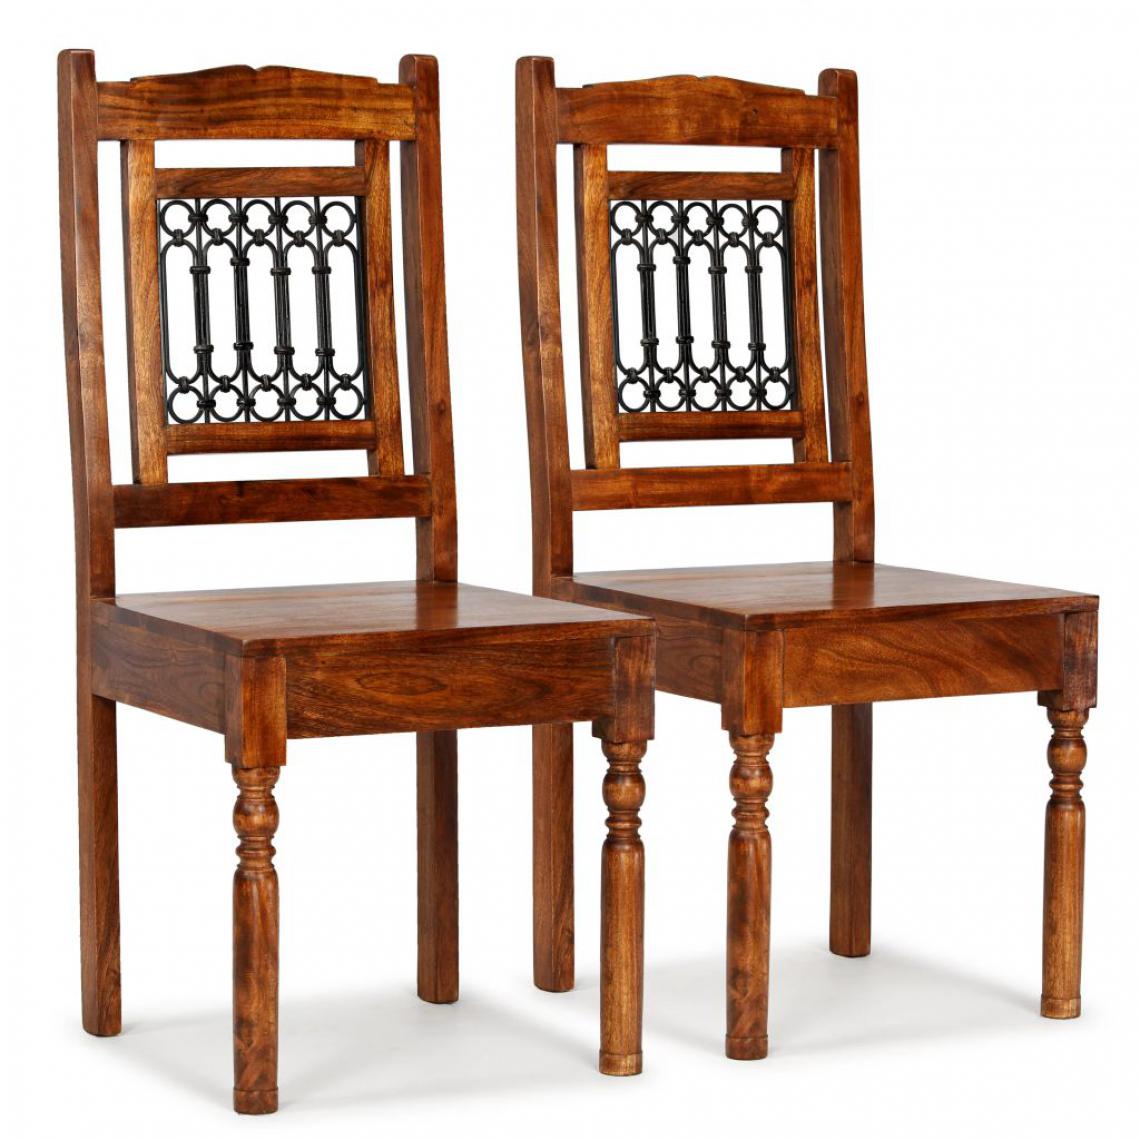 Decoshop26 - Lot de 2 chaises de salle à manger cuisine bois massif avec finition Sesham CDS020115 - Chaises